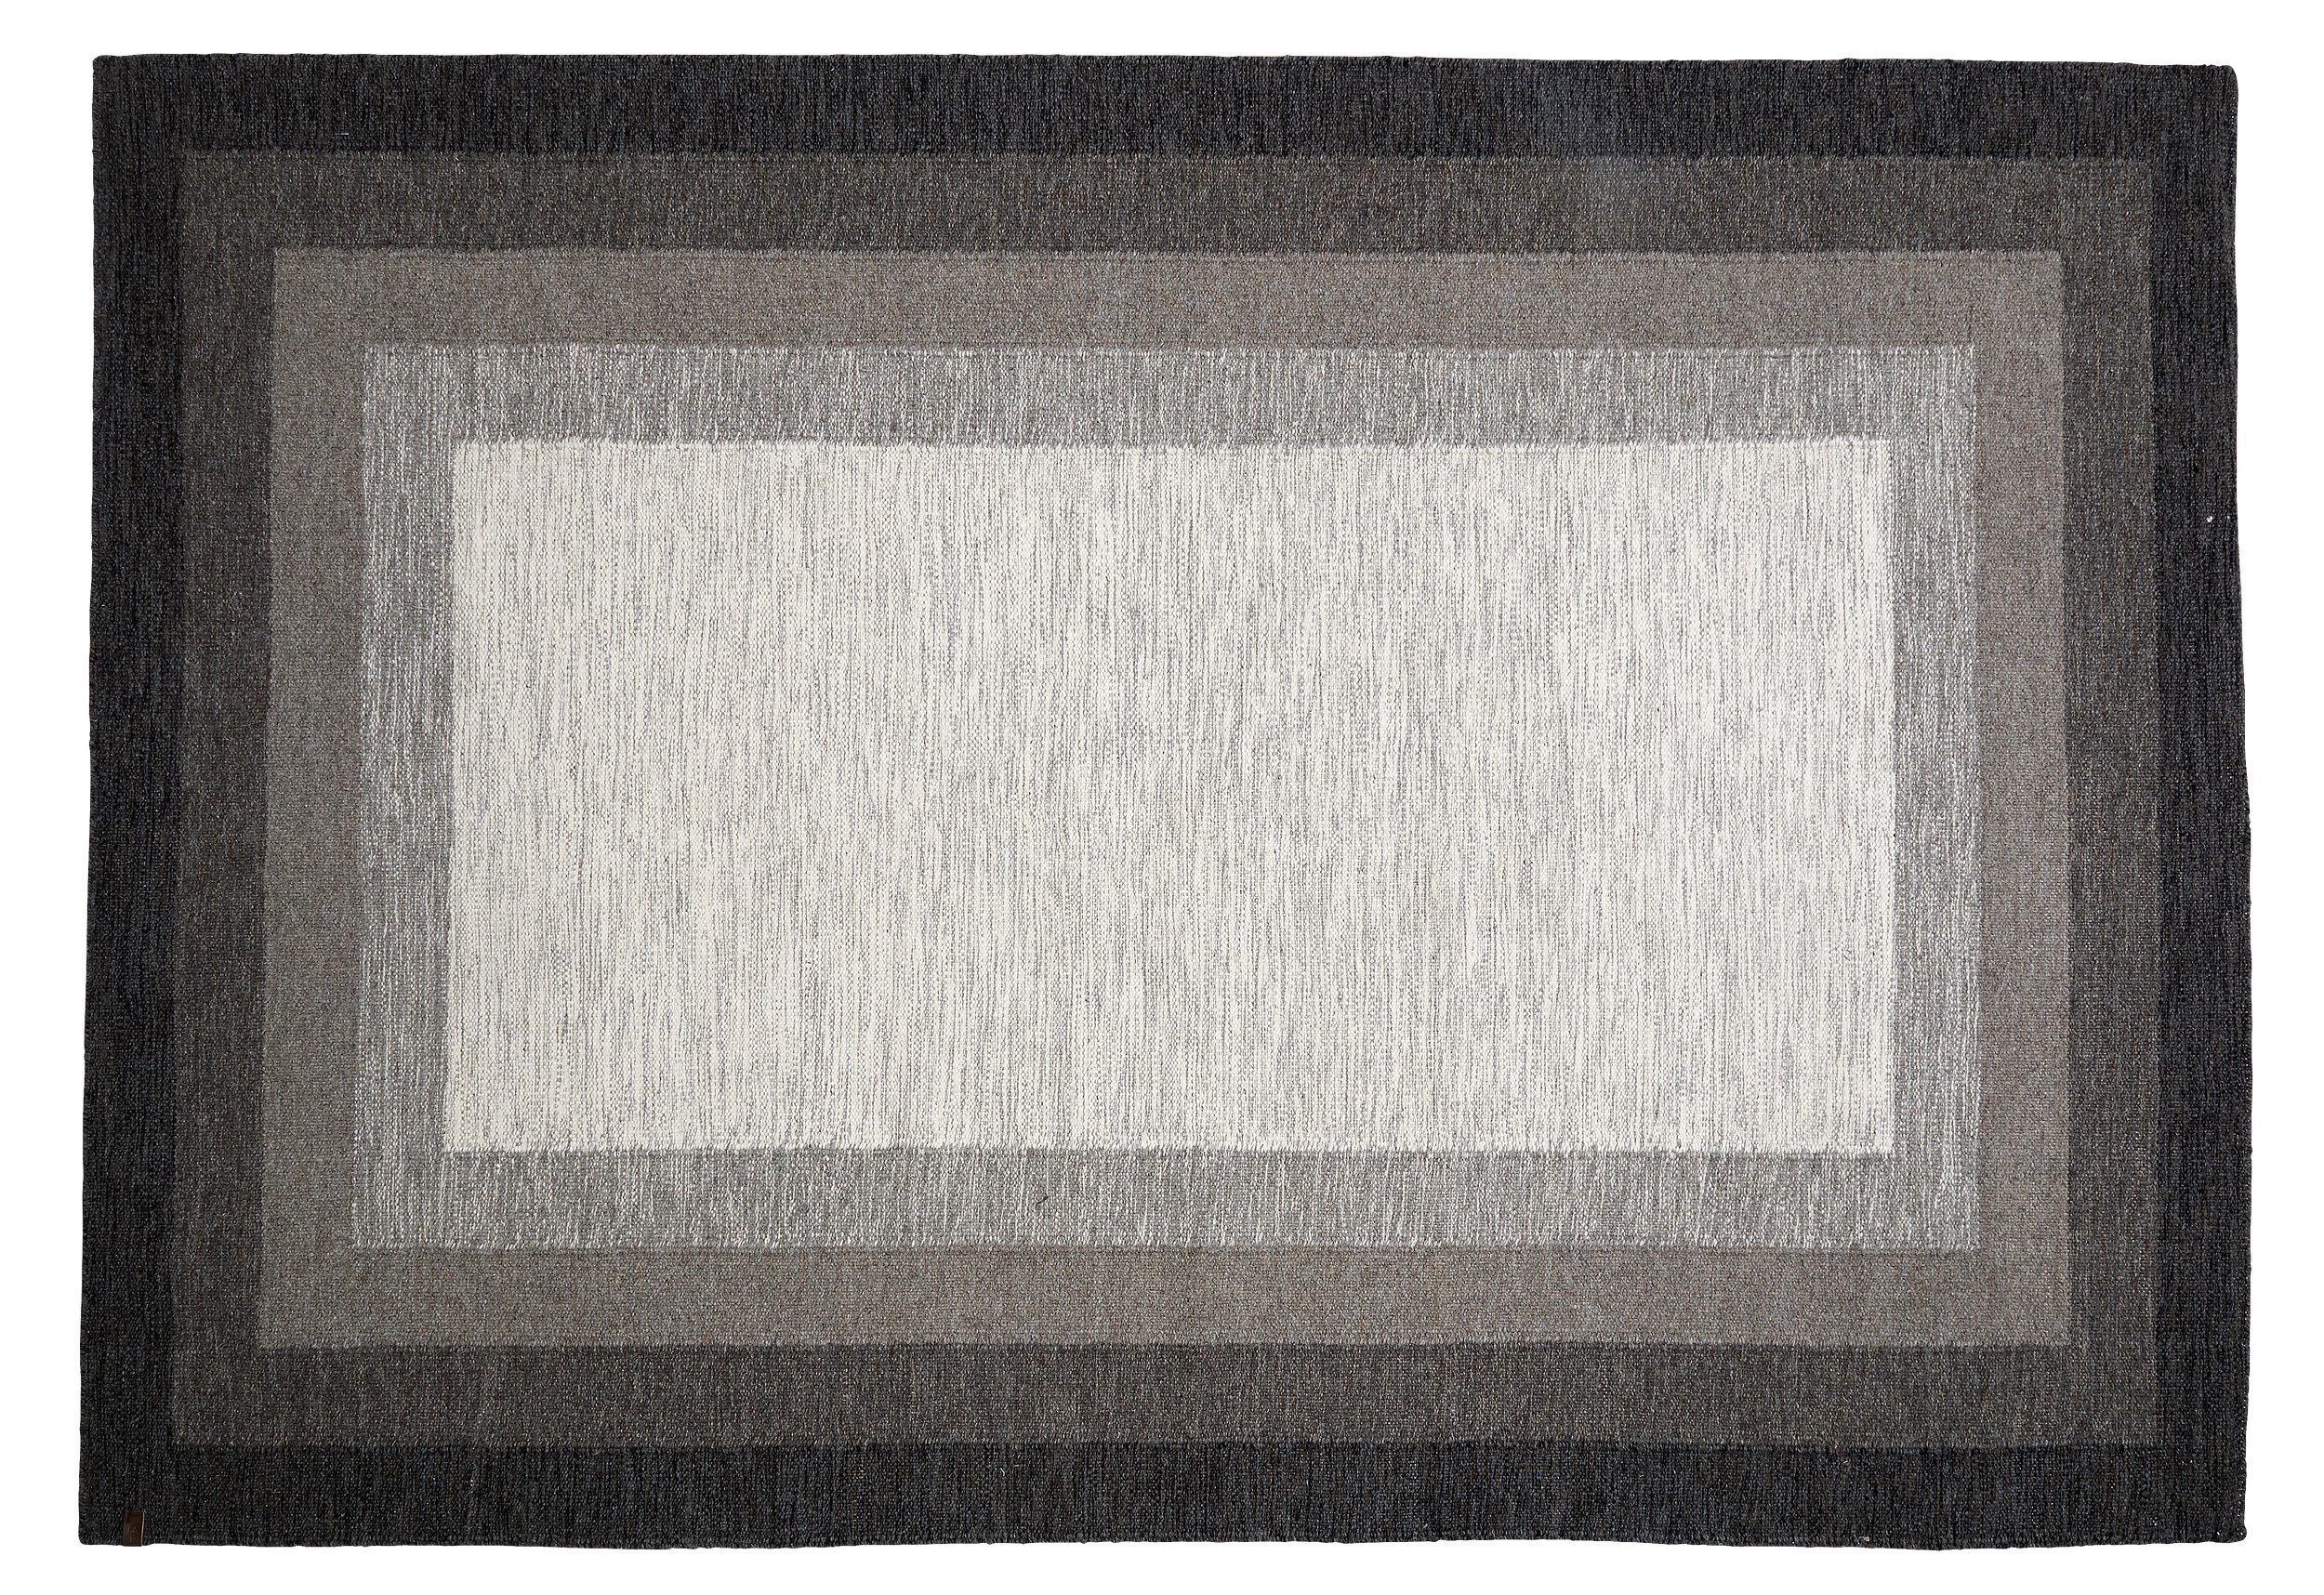 Åland Kelimmatta 200 x 300 cm - Brun/beige ull och kvadratiskt mönster